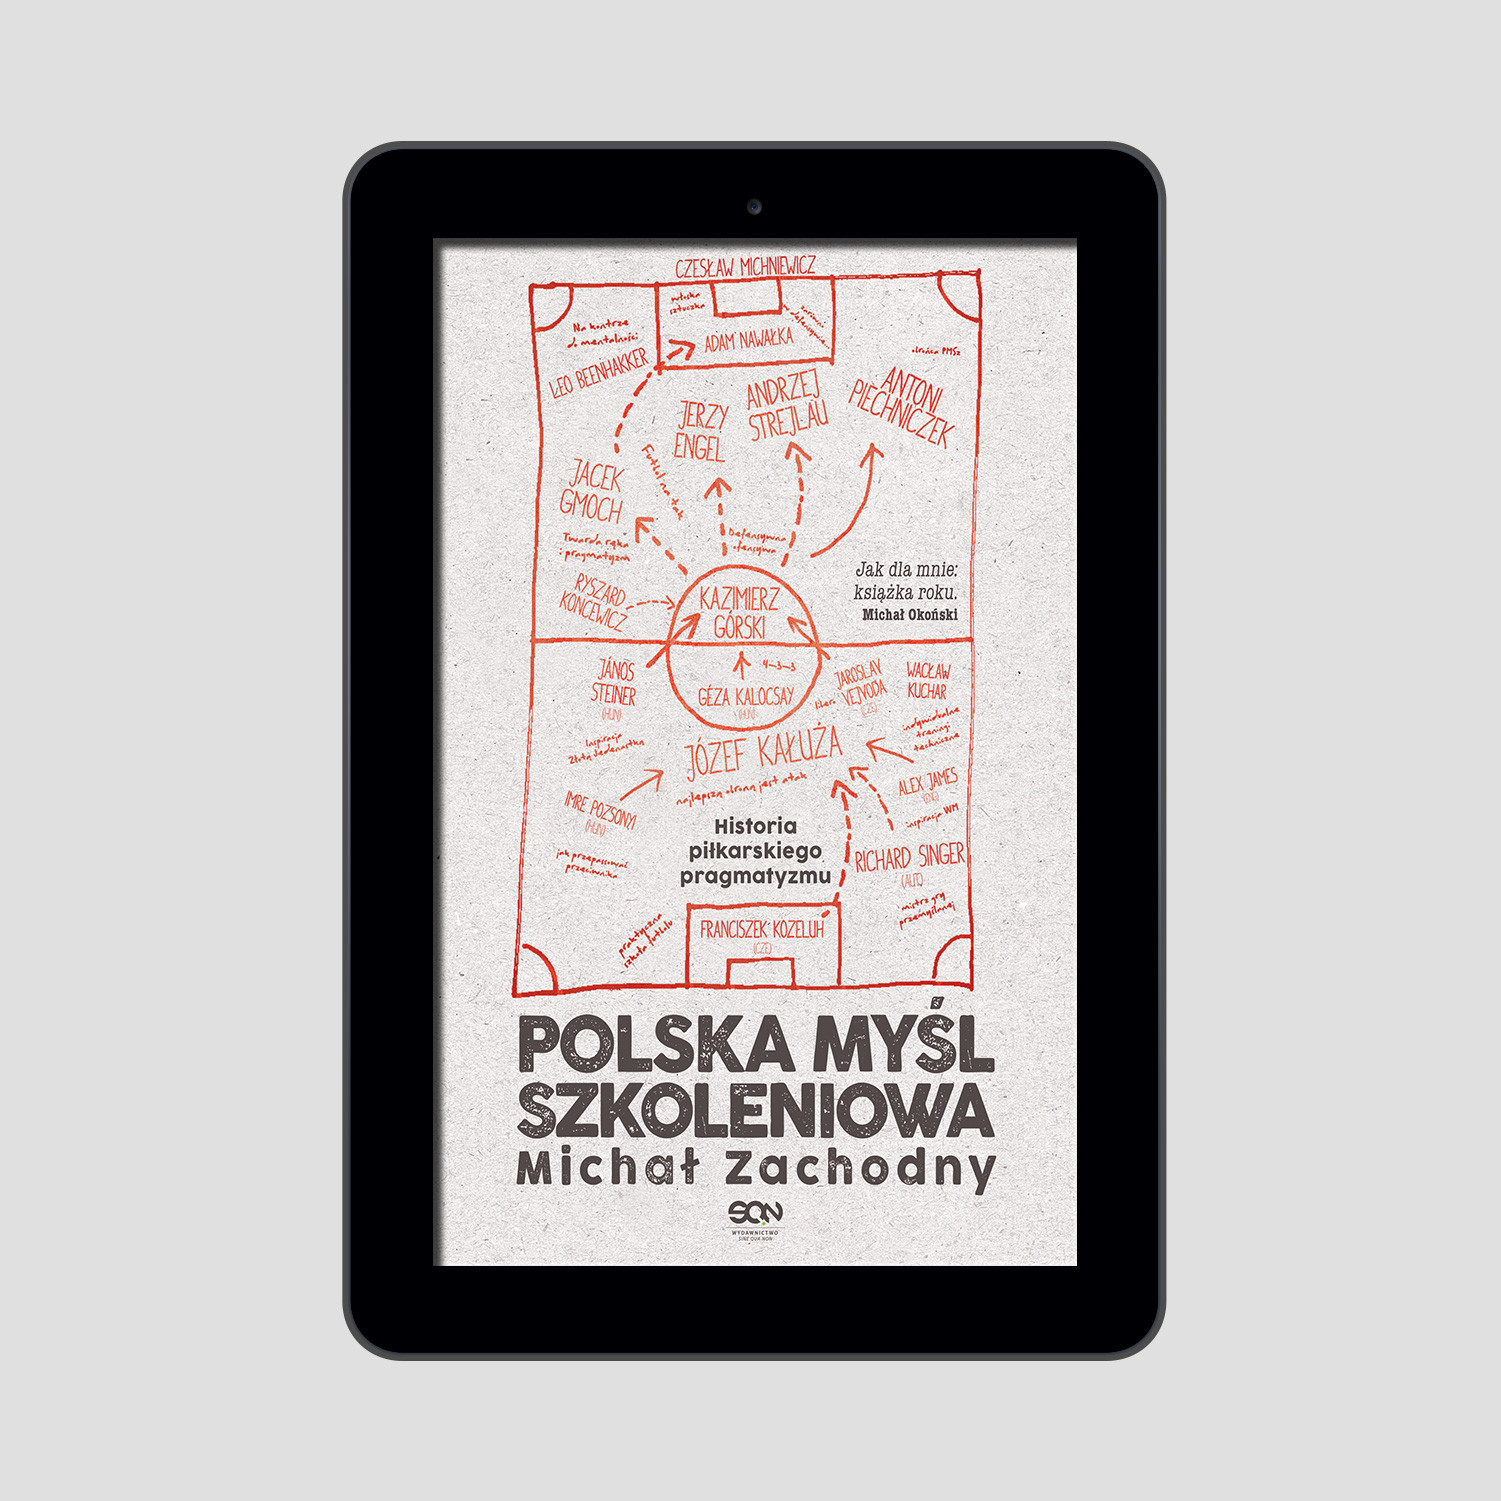 Okładka:Polska myśl szkoleniowa. Historia piłkarskiego pragmatyzmu 